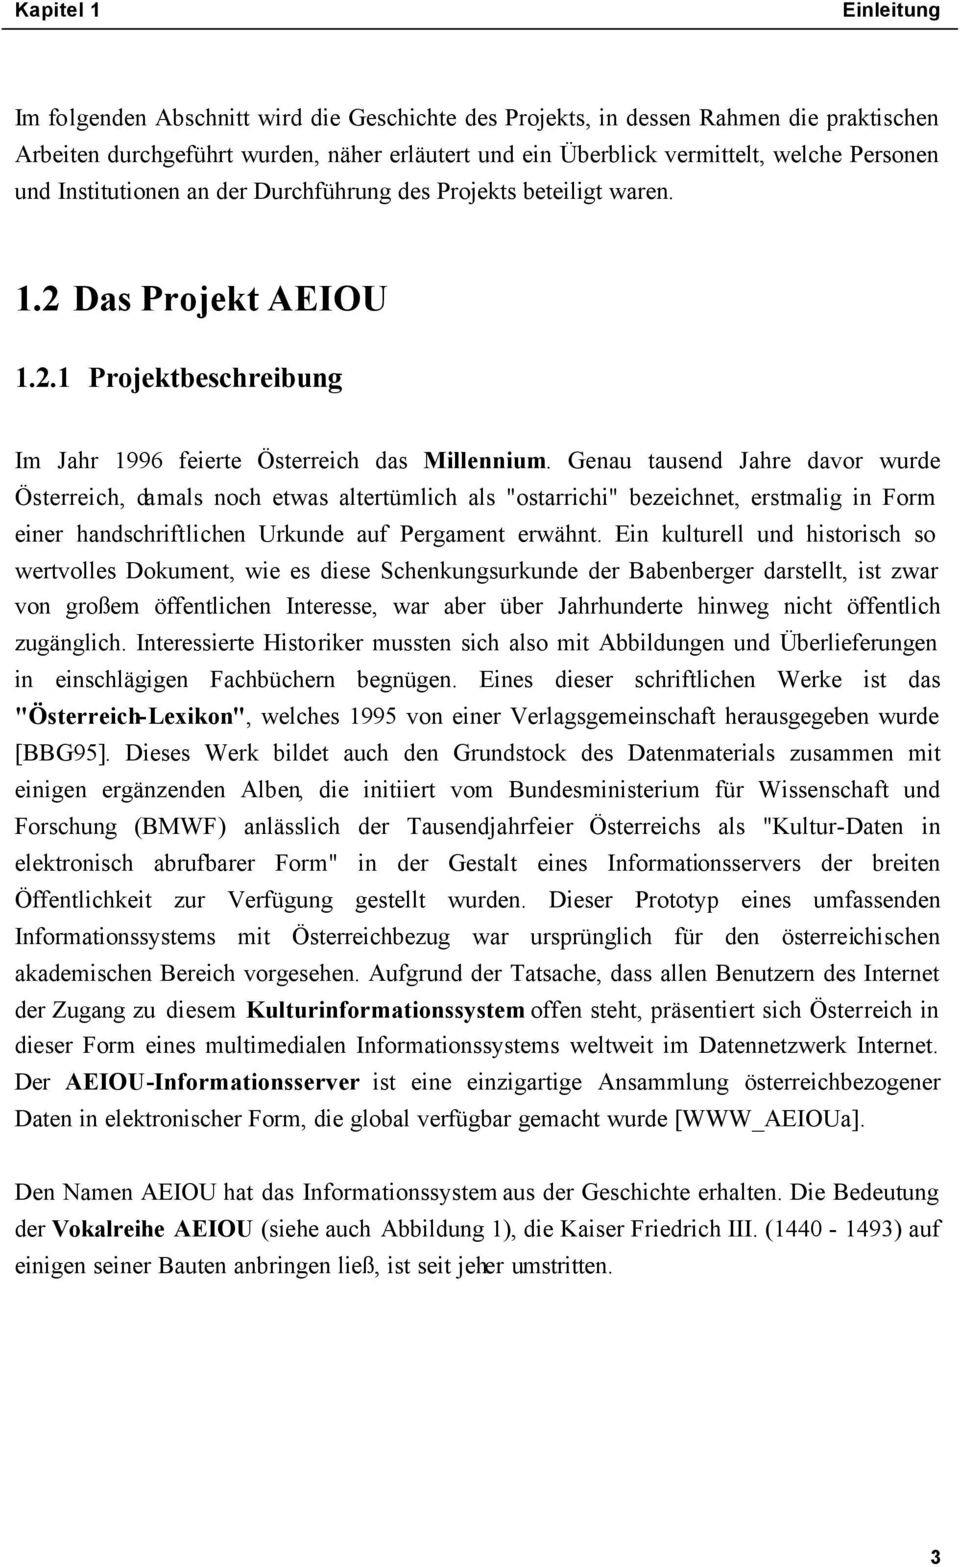 Genau tausend Jahre davor wurde Österreich, damals noch etwas altertümlich als "ostarrichi" bezeichnet, erstmalig in Form einer handschriftlichen Urkunde auf Pergament erwähnt.